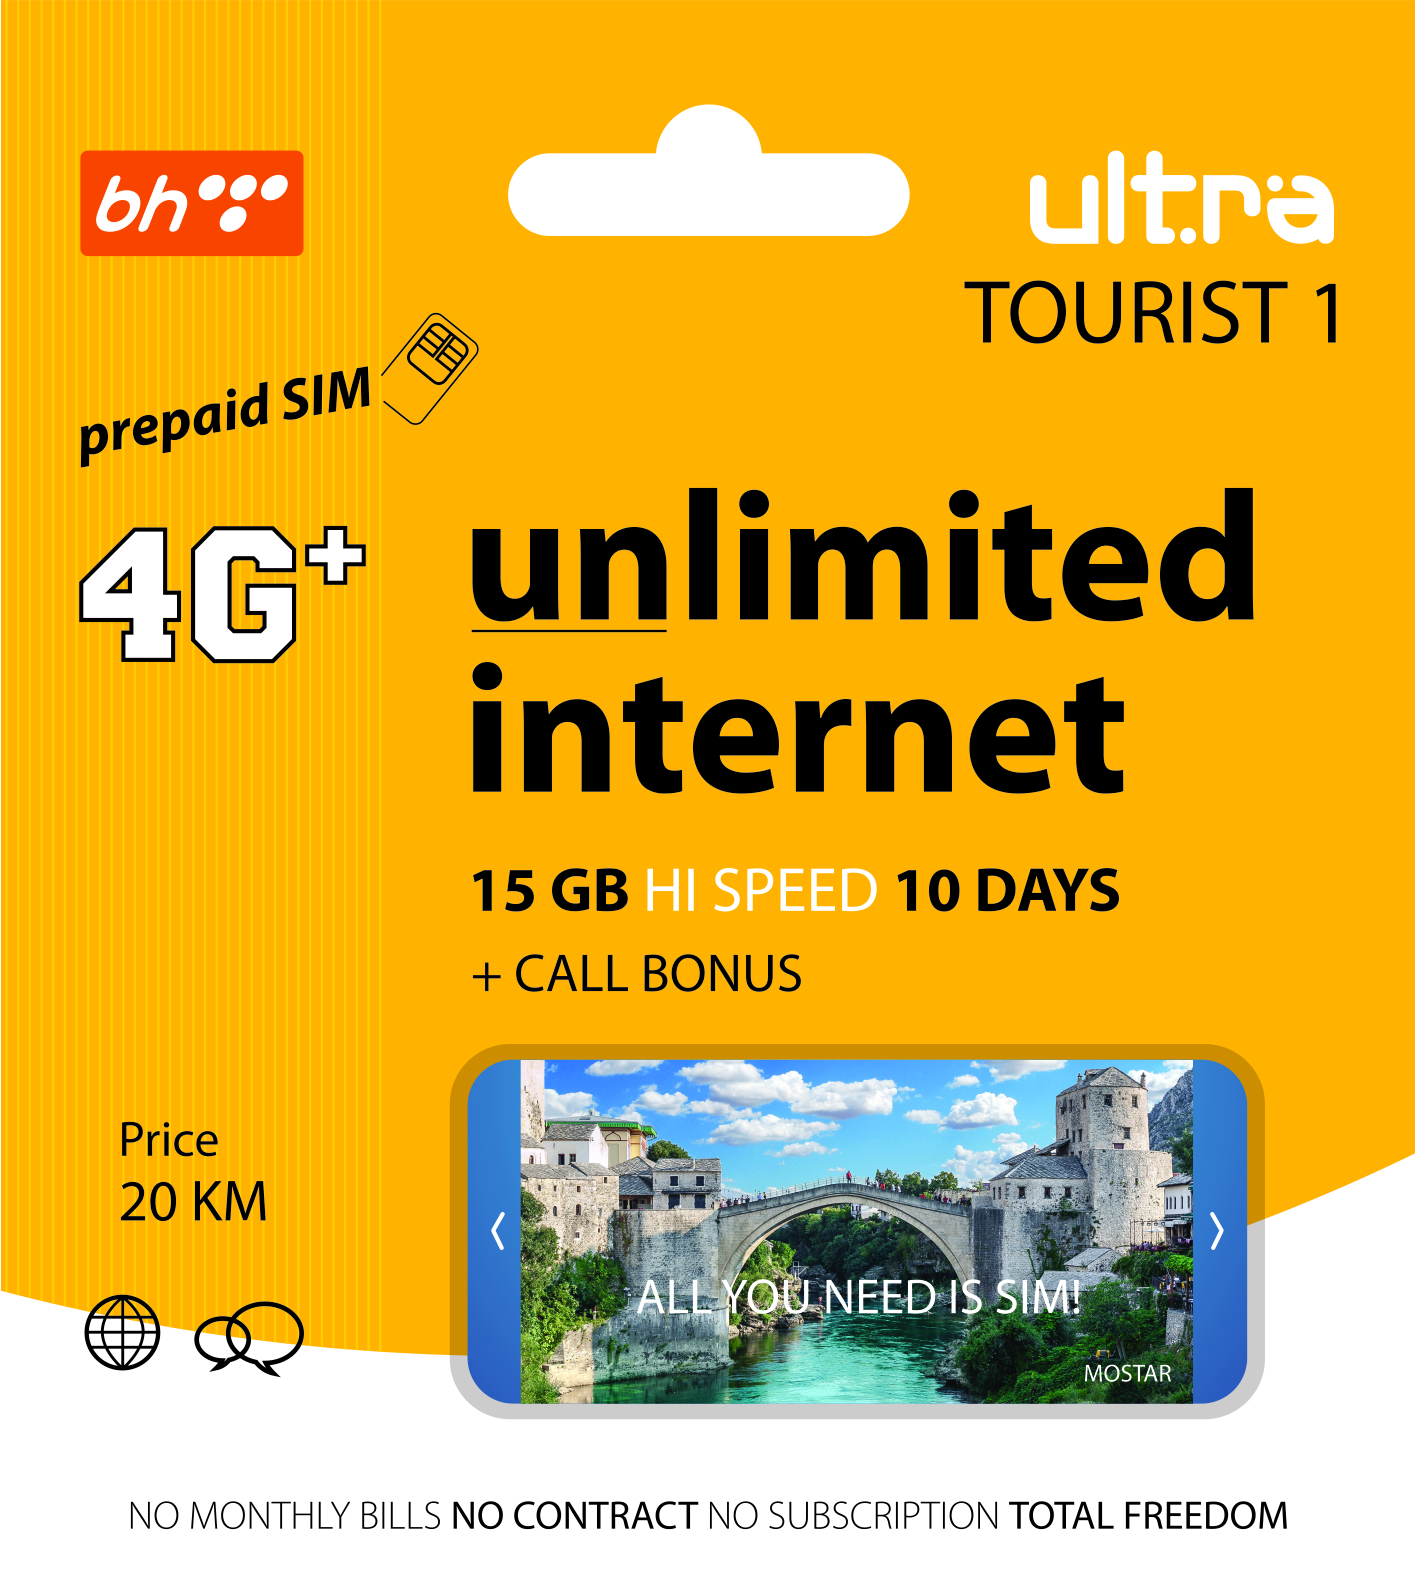 bh telecom travel internet